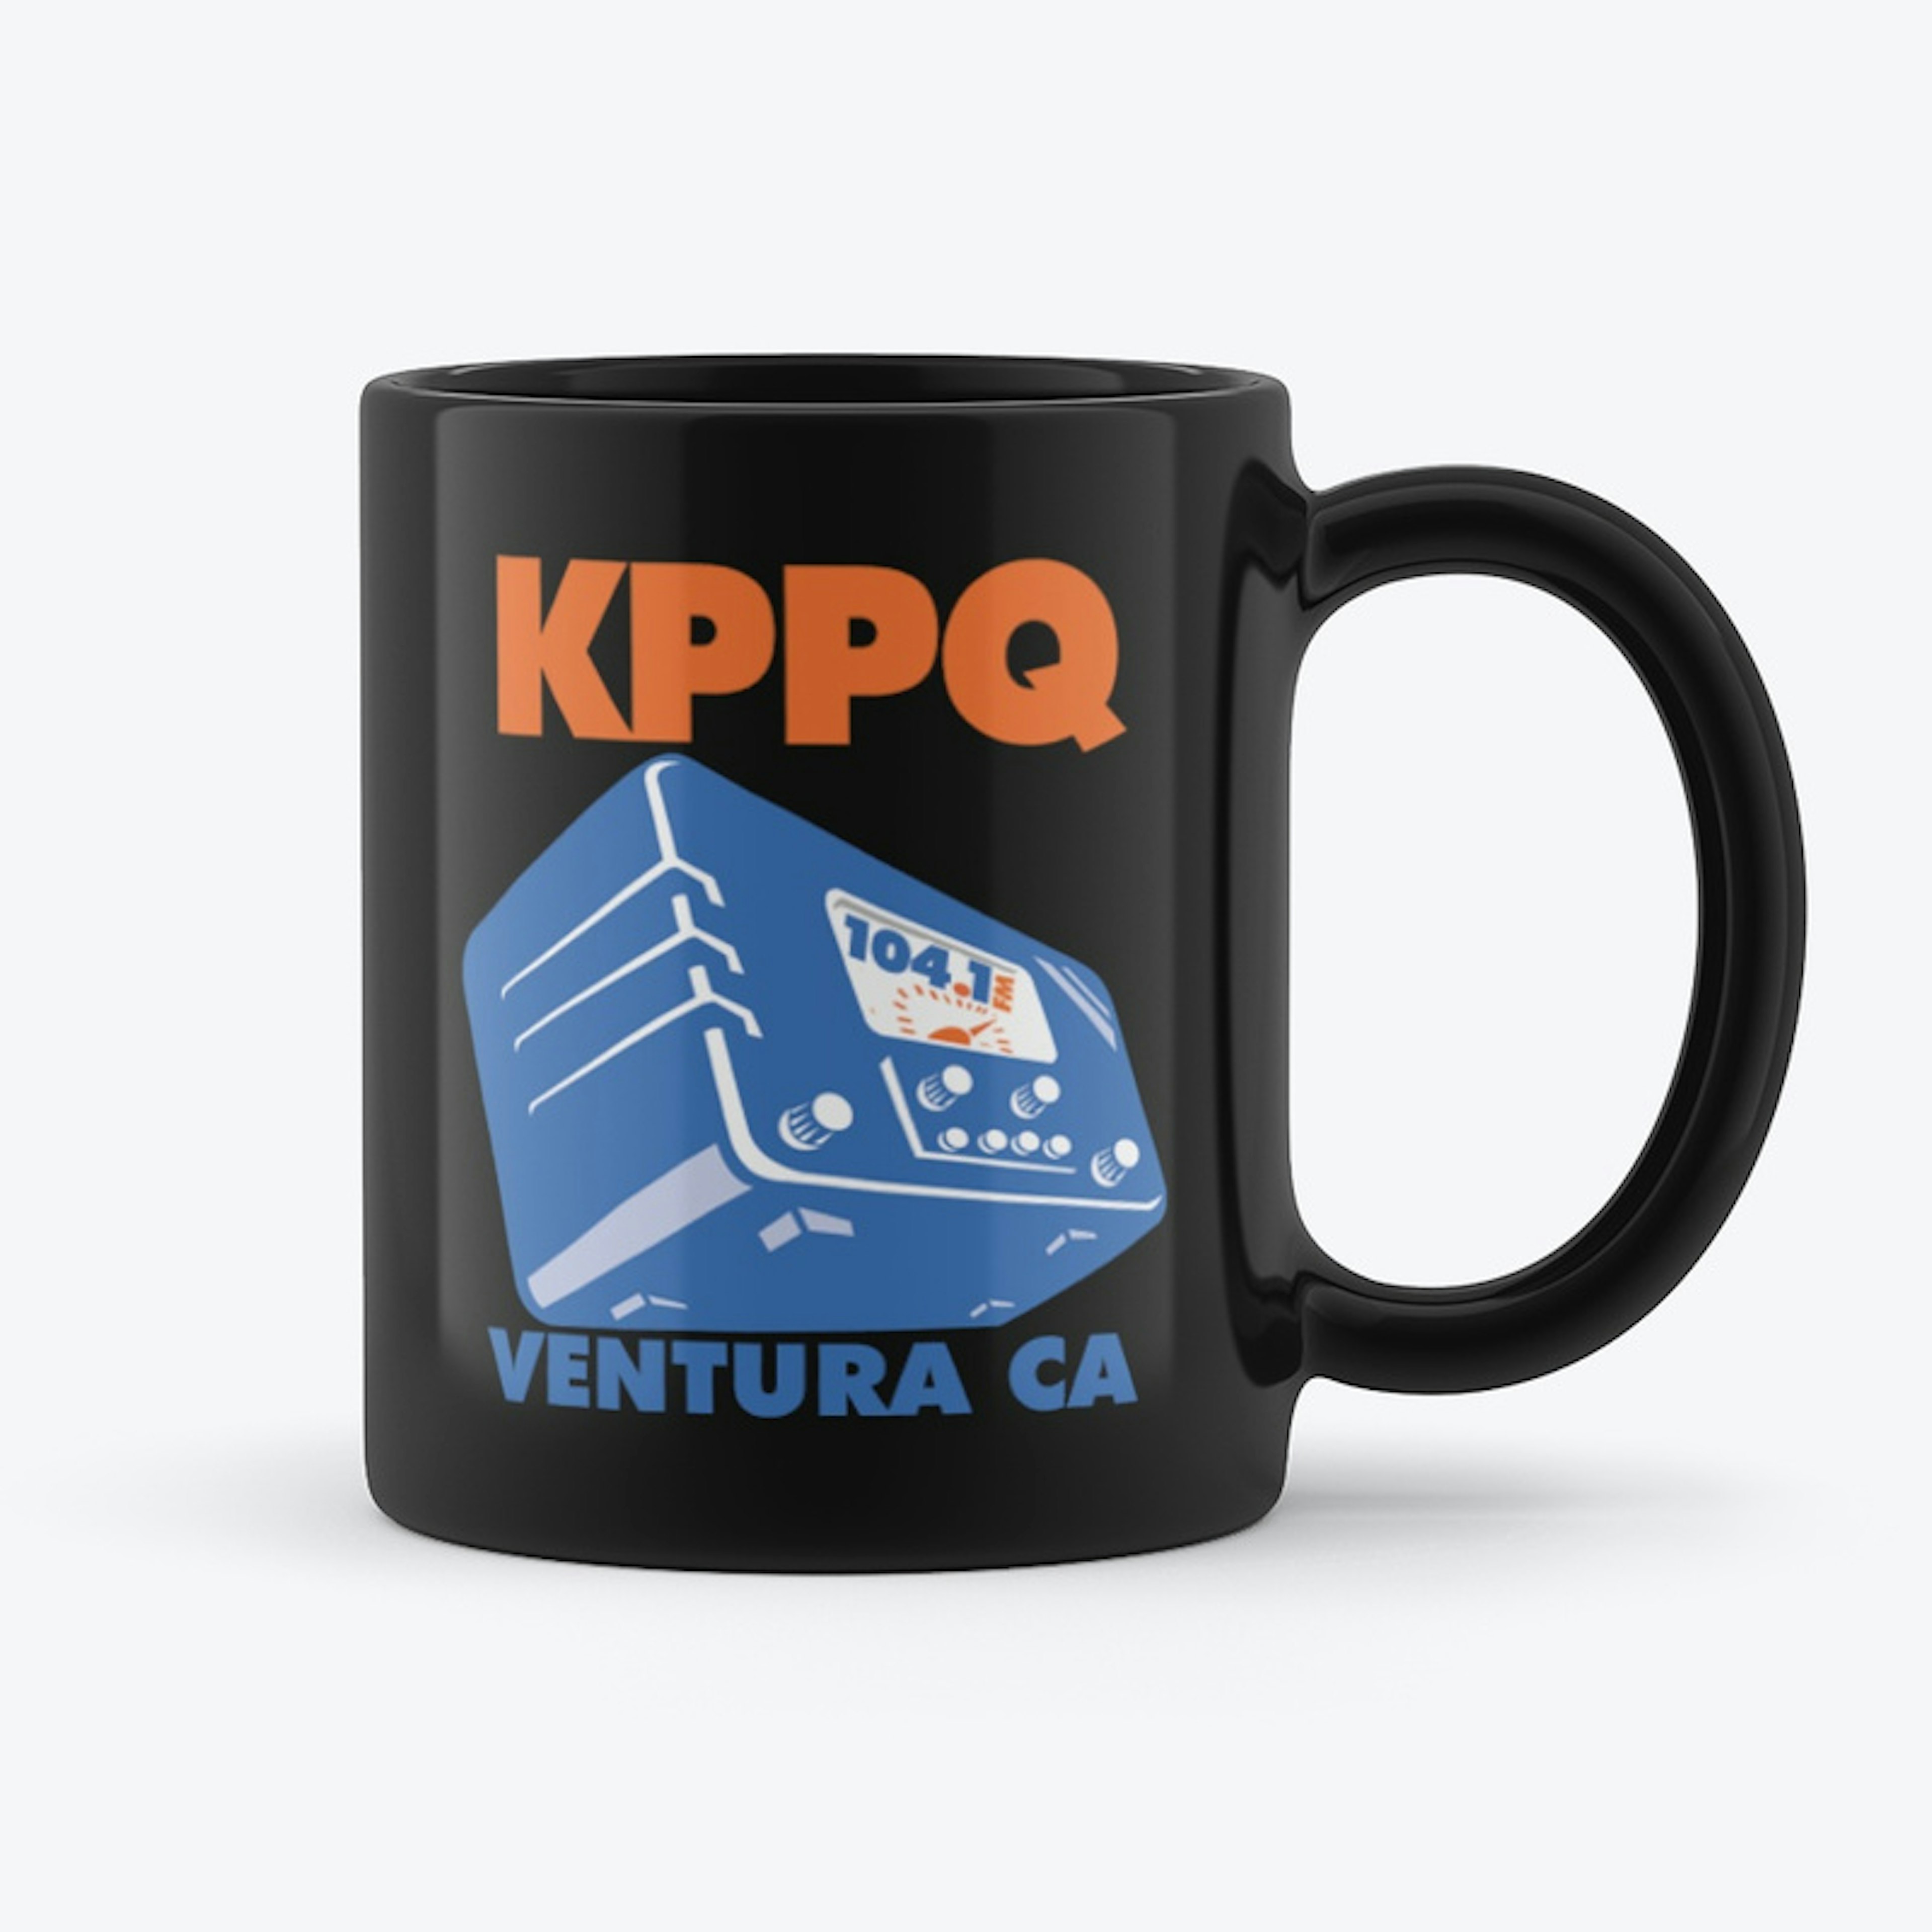 KPPQ Coffee Mug